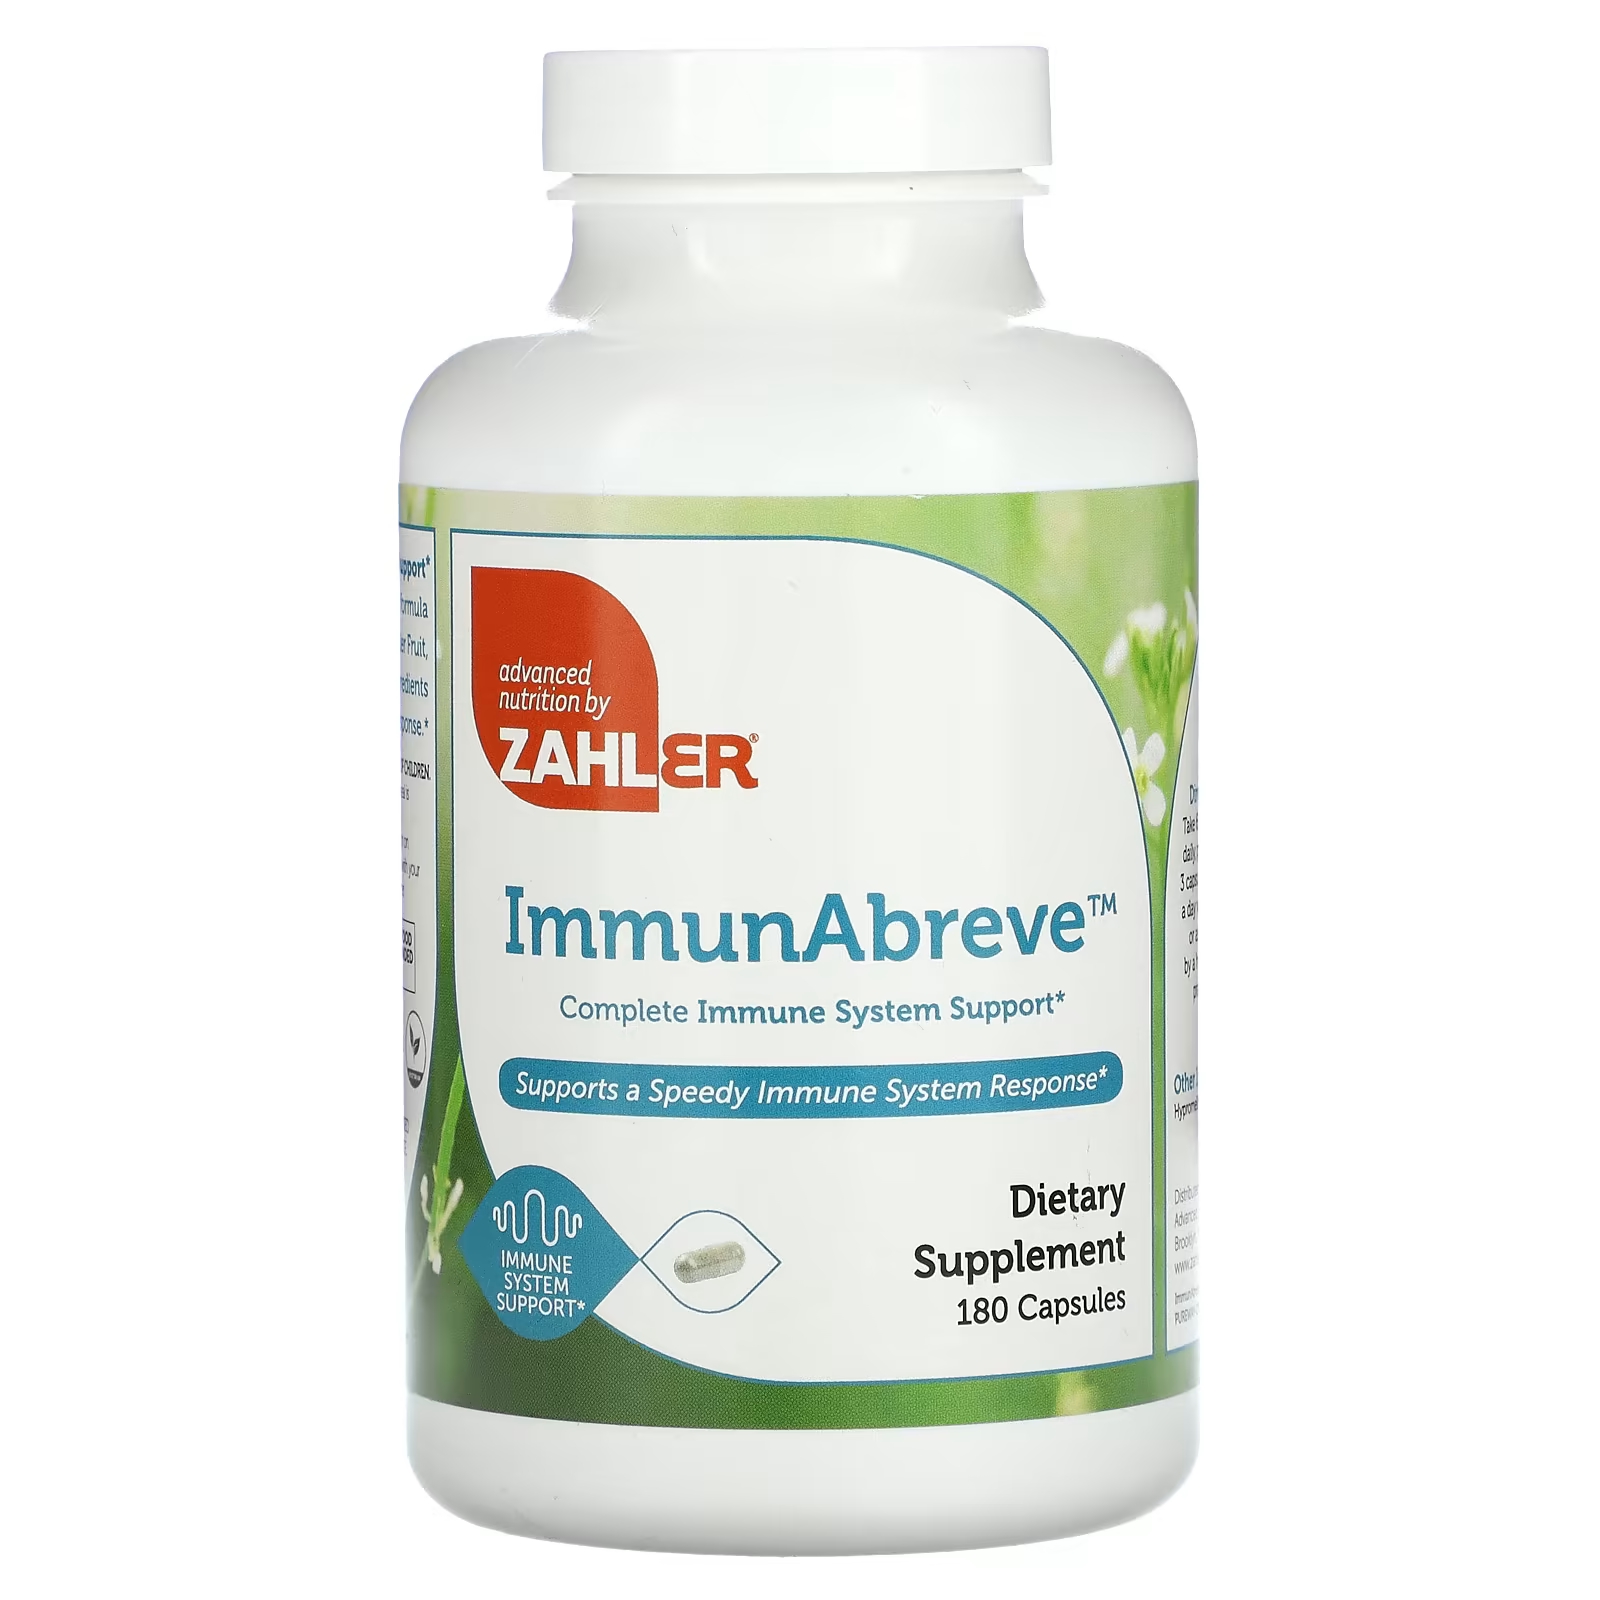 Пищевая добавка Zahler ImmunAbreve полная поддержка иммунной системы, 180 капсул